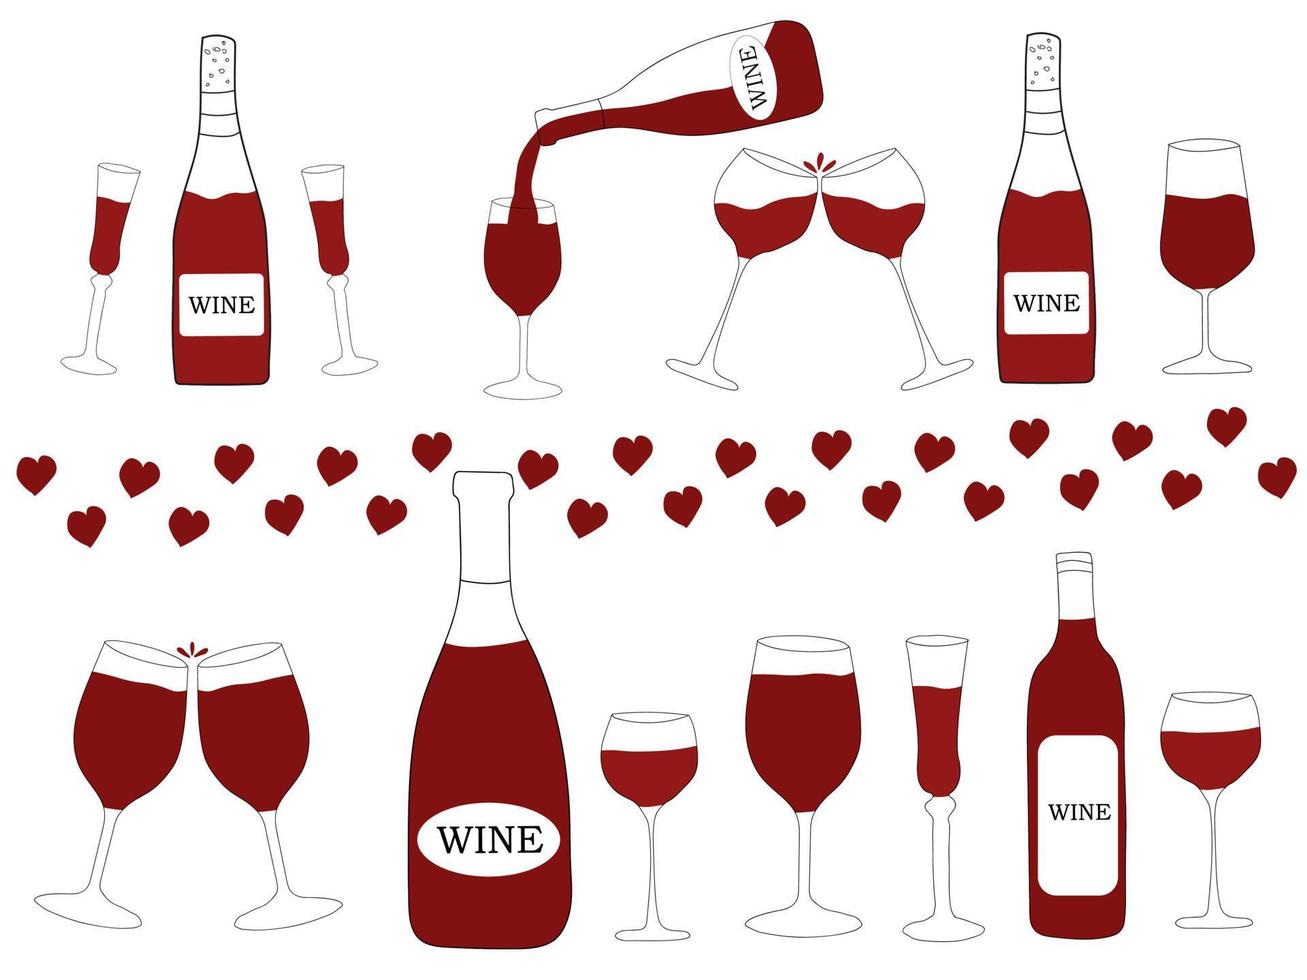 rode wijn in flessen en glazen. vectorillustratie in doodle style.different soorten wijnflessen vector